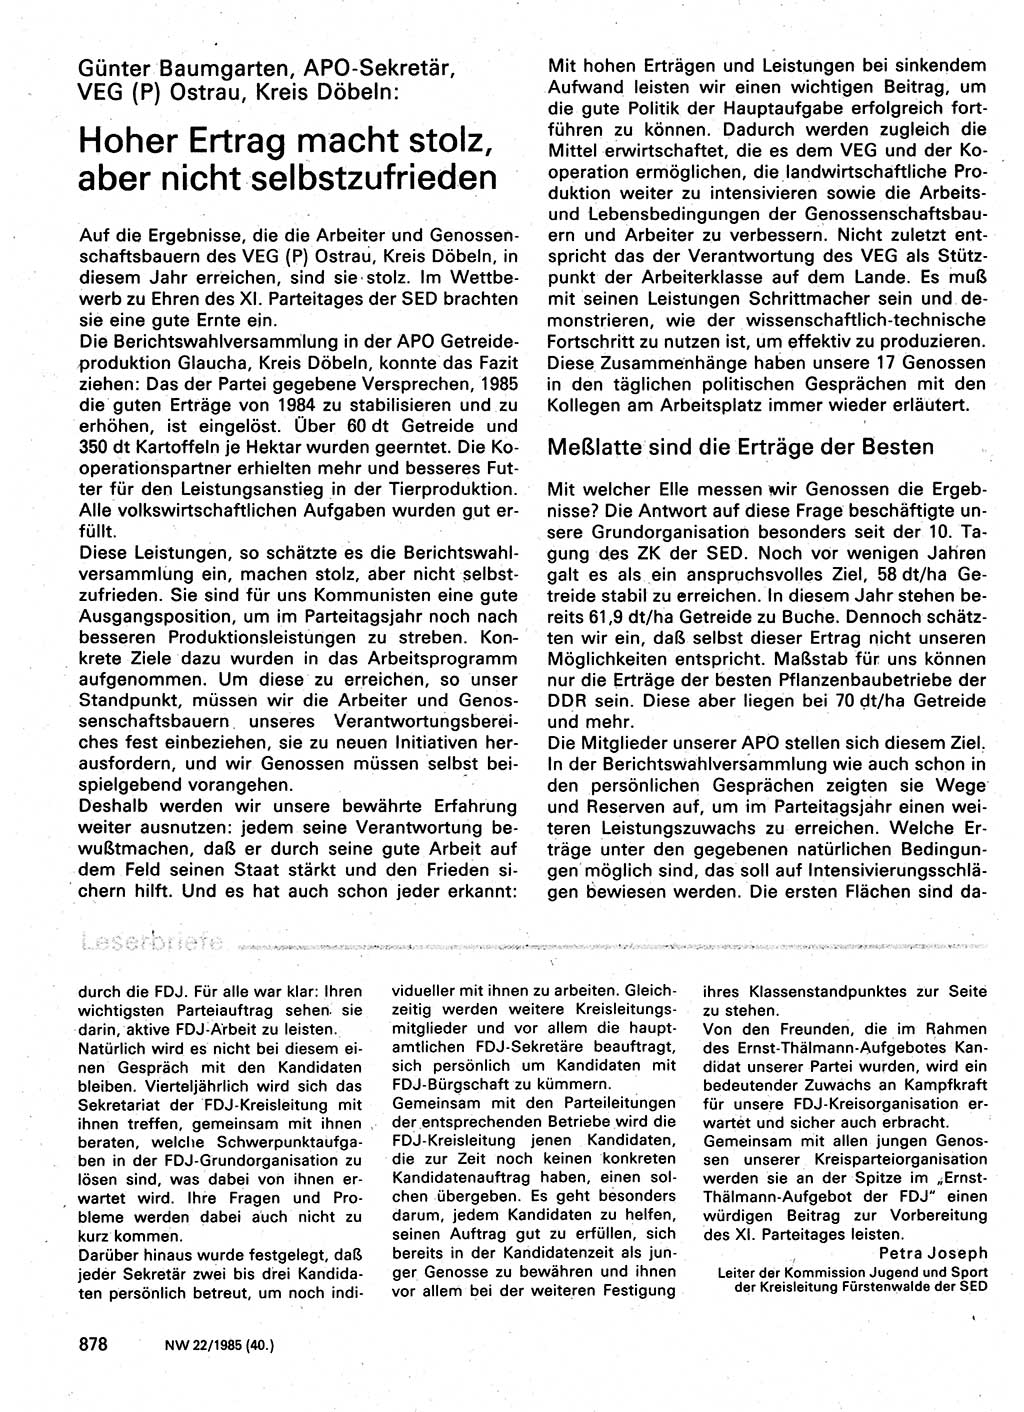 Neuer Weg (NW), Organ des Zentralkomitees (ZK) der SED (Sozialistische Einheitspartei Deutschlands) für Fragen des Parteilebens, 40. Jahrgang [Deutsche Demokratische Republik (DDR)] 1985, Seite 878 (NW ZK SED DDR 1985, S. 878)